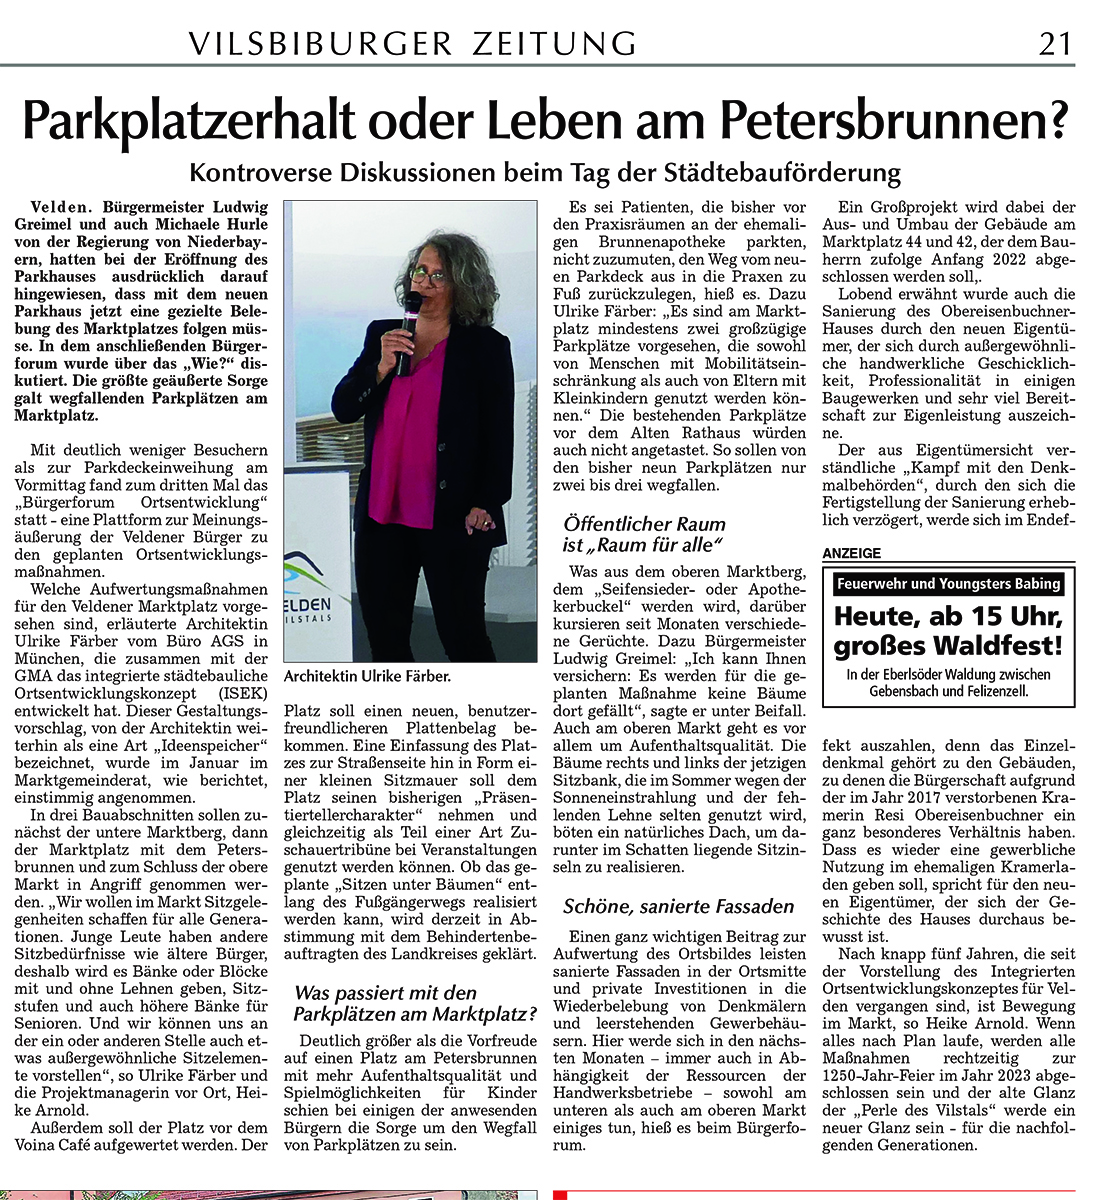 Pressebericht von Heike Arnold/Ulrike Färber zum 3. Bürgerforum Ortsentwicklung, erschienen in der Vilsbiburger Zeitung vom 20.07.2019